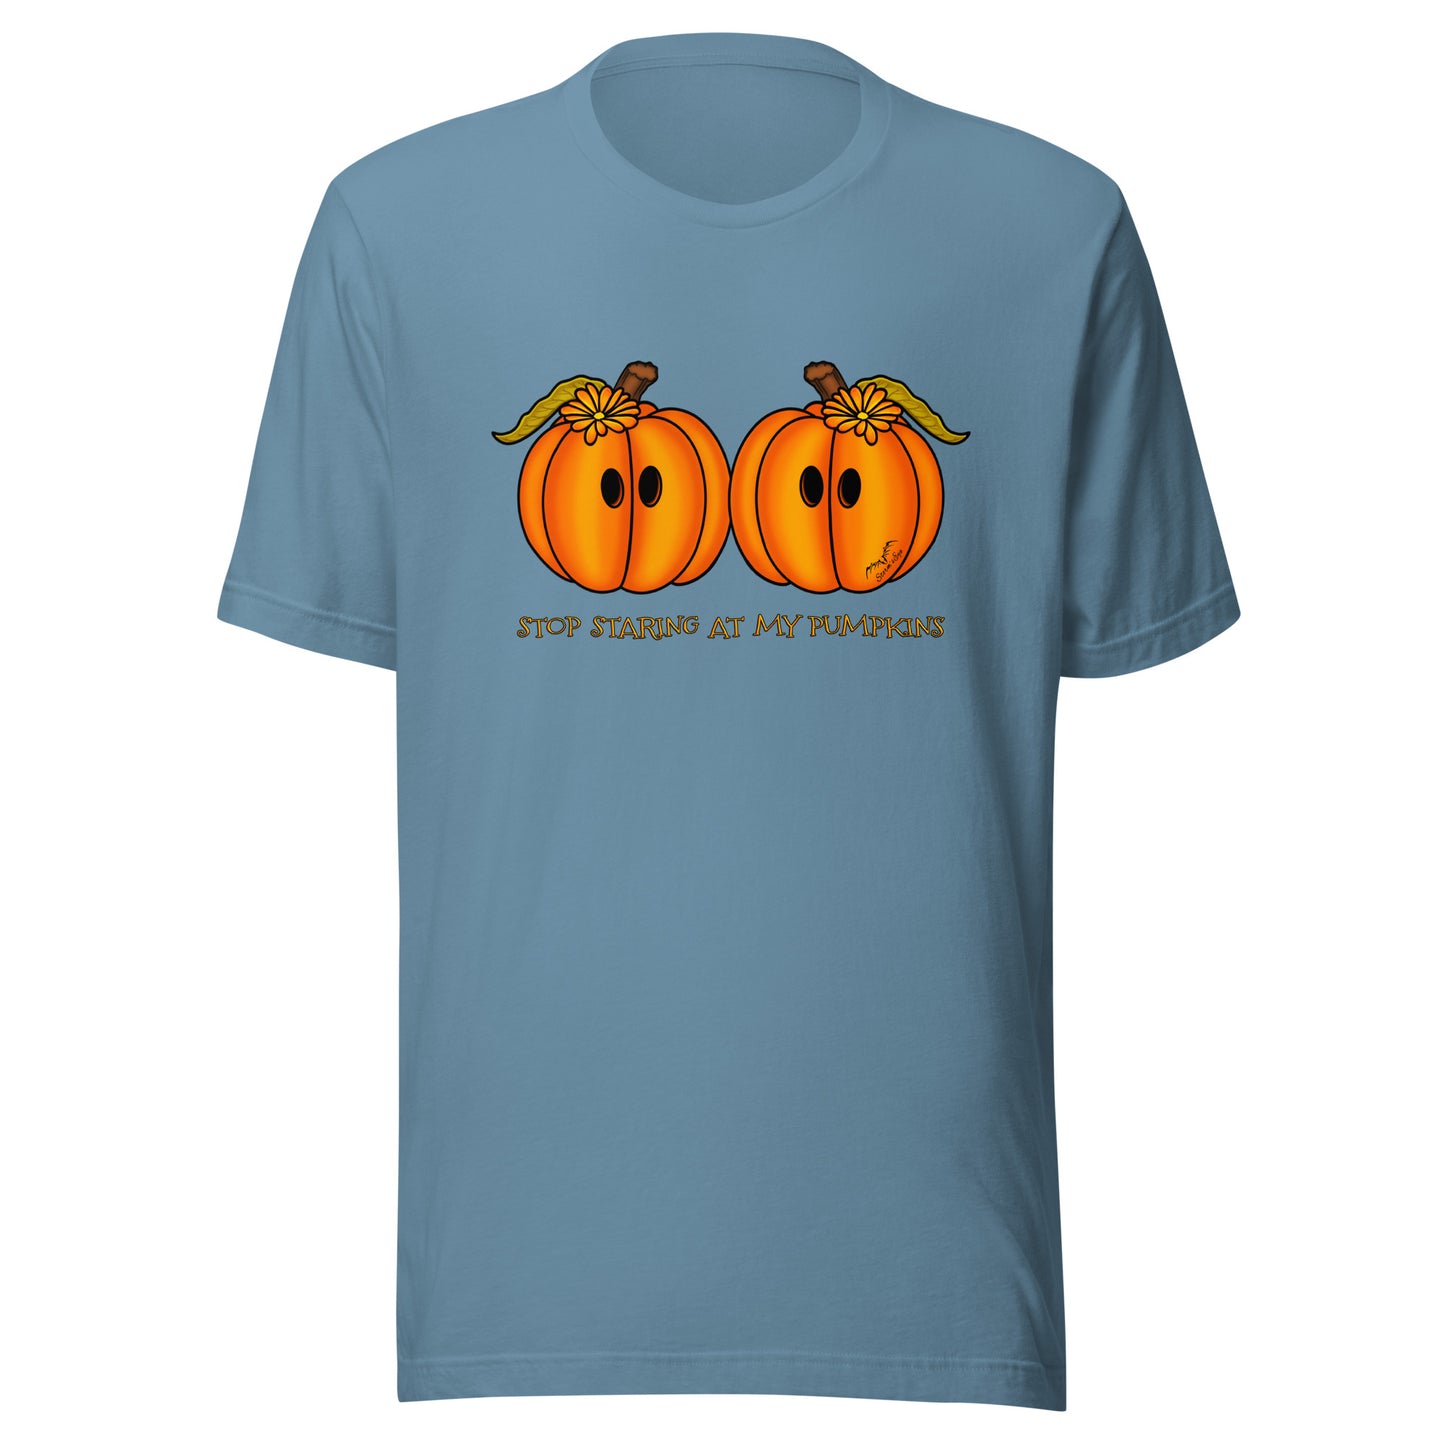 stormseye design staring pumpkins T shirt flat view light blue